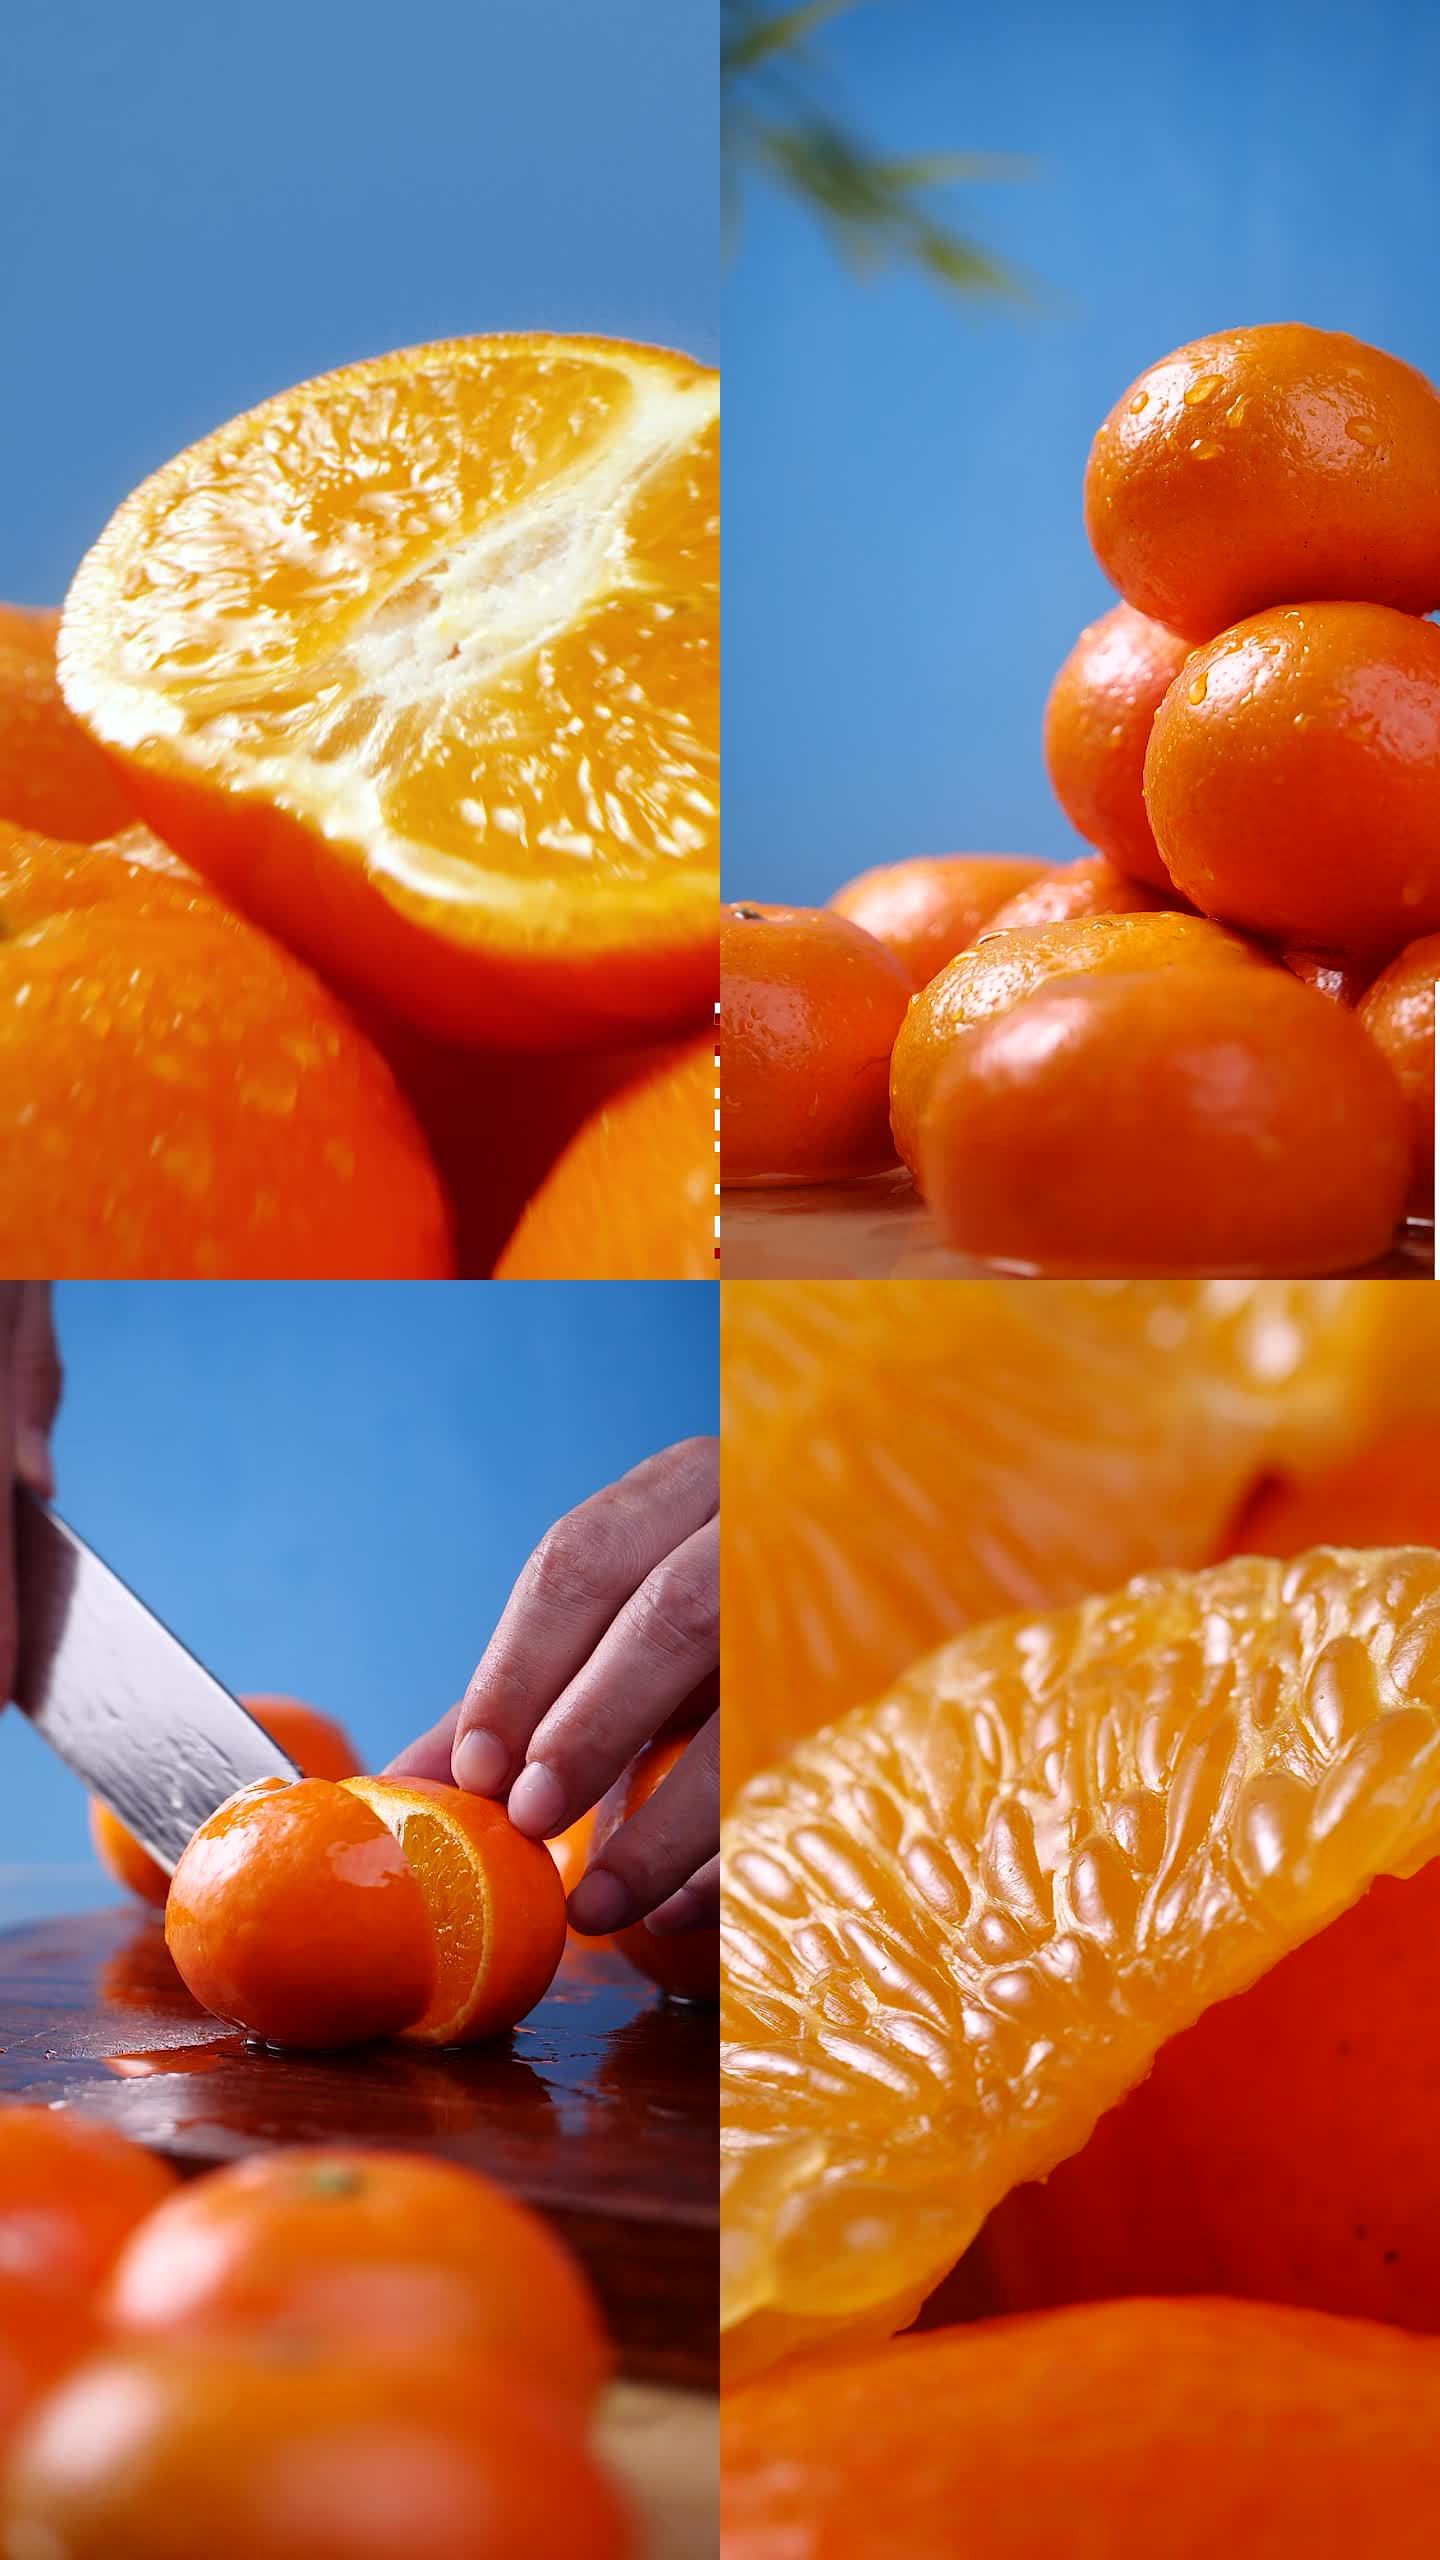 橘子 橙子